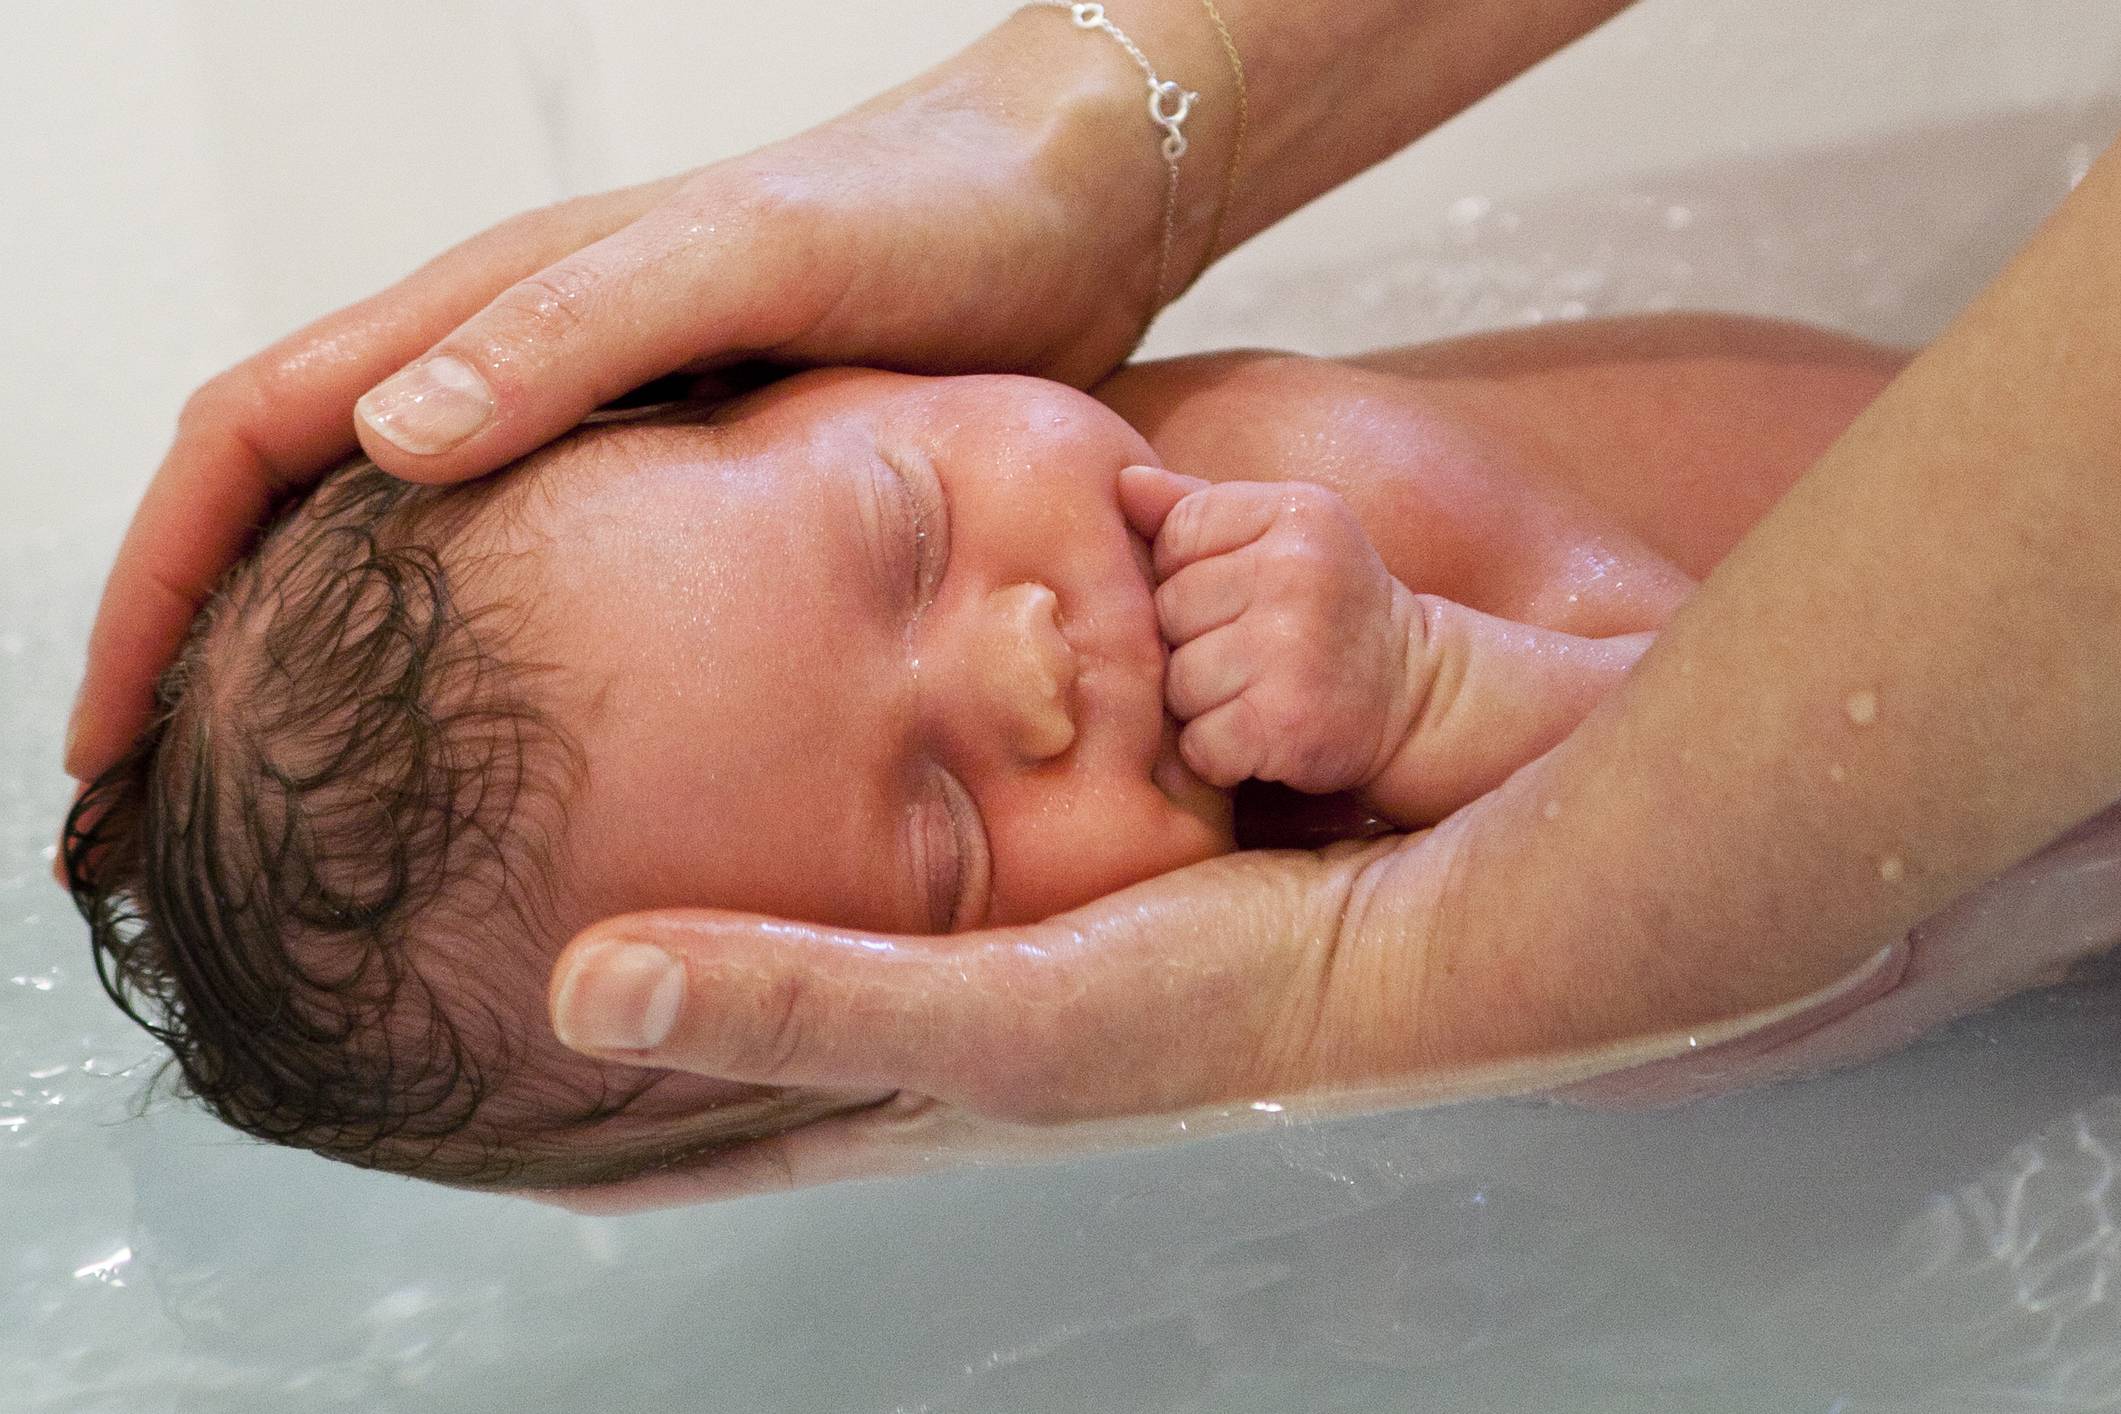 Как правильно купать новорожденного ребенка: первое купание, 10 важных правил, отзывы о средствах для купания, видео